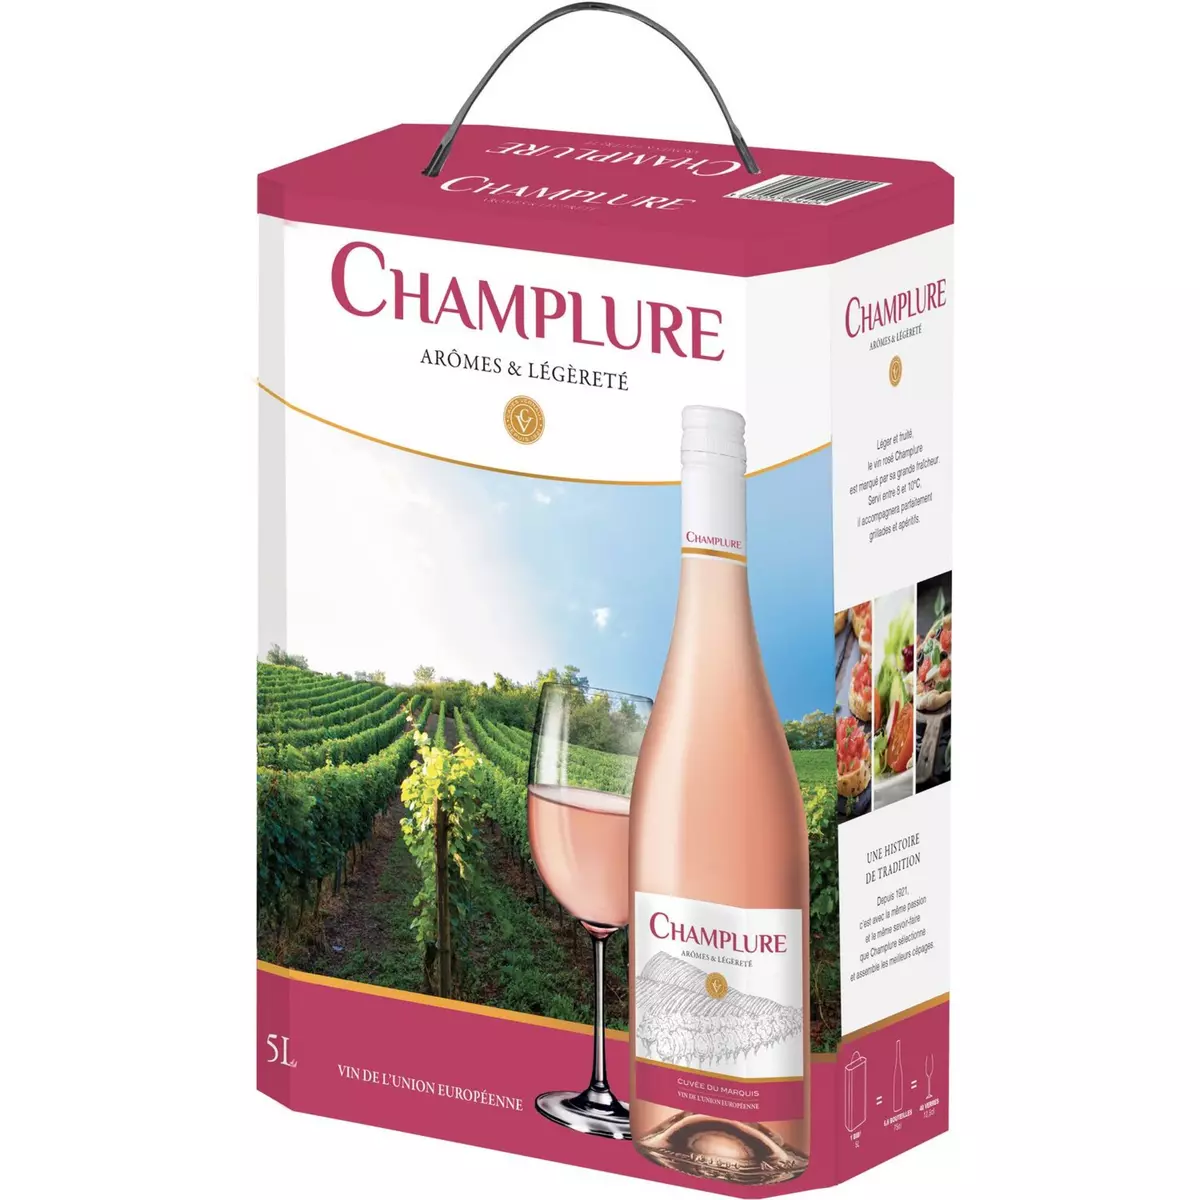 CHAMPLURE Vin de l'Union Européenne Champlure rosé 5L